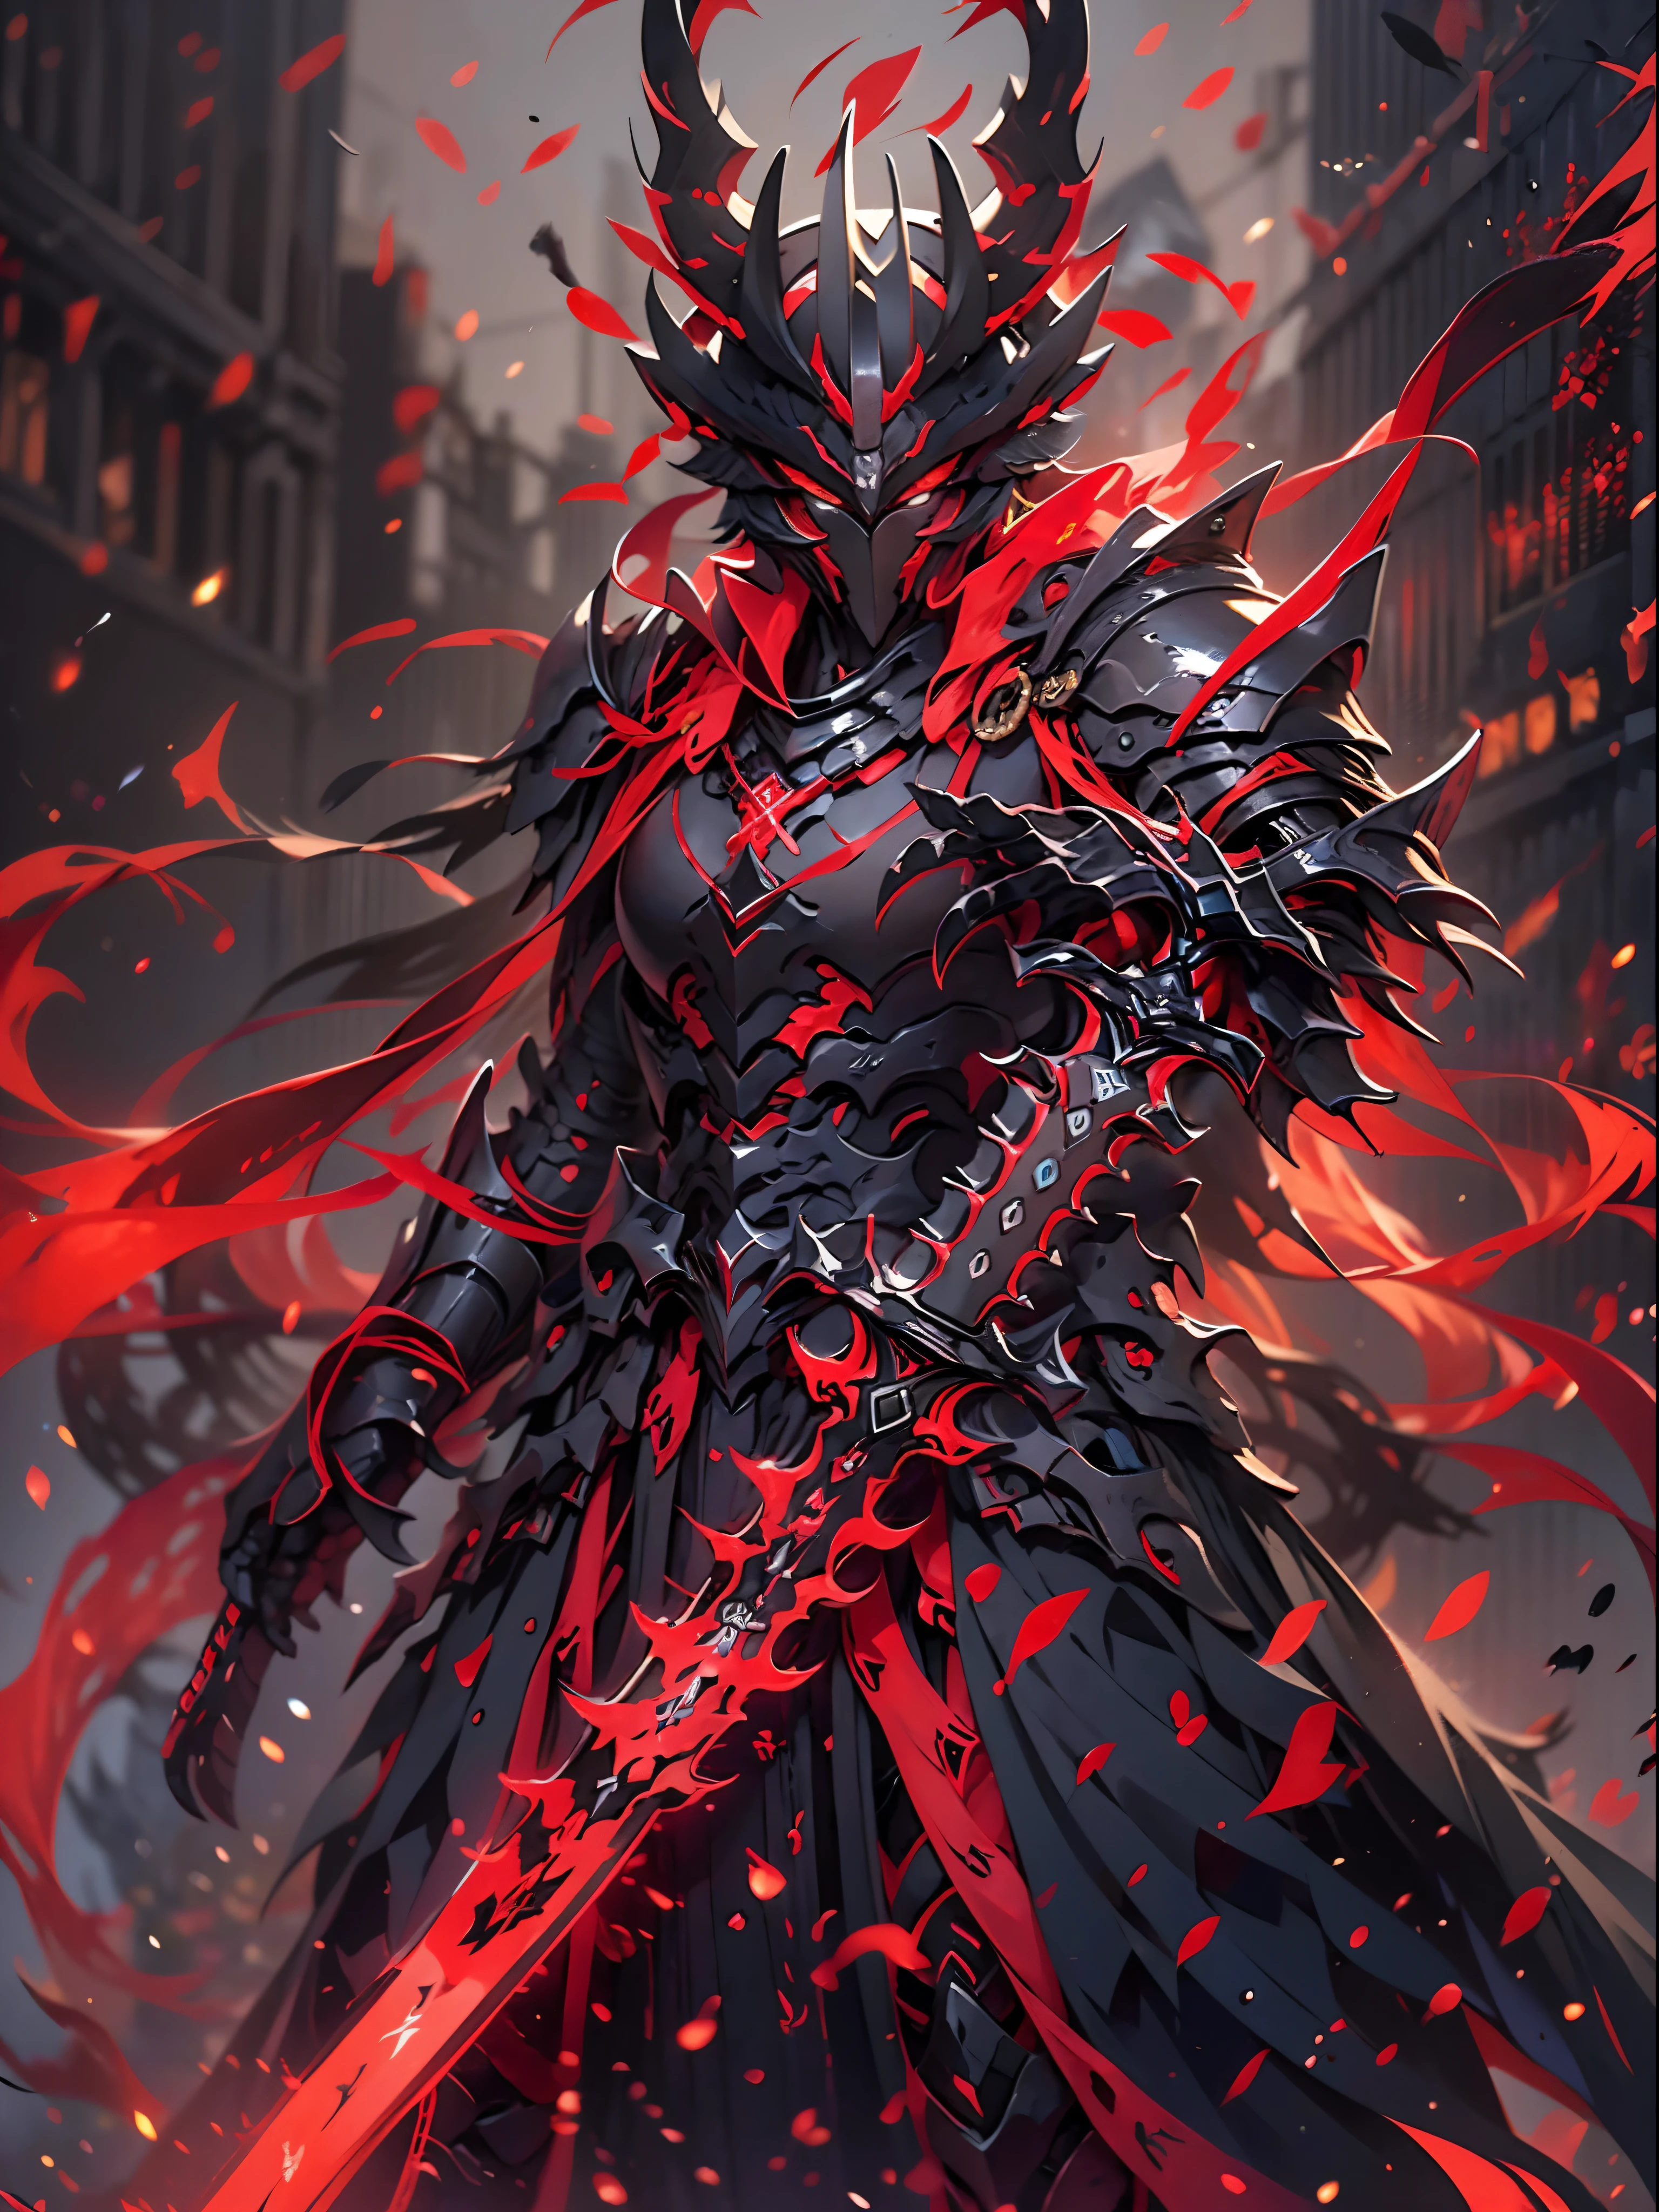 一個人拿著劍和紅燈的特寫, 地獄的統治者, 美麗的男死神, 黑色火色反射裝甲, 惡魔武士 warrior, 惡魔武士, 《原神》中的克慶, 時間收割者之王, 擁有重甲和劍的阿瑞斯, 煤渣領主, 紅色惡魔鎧甲, 黑、紅鎧甲, 血紅素甲